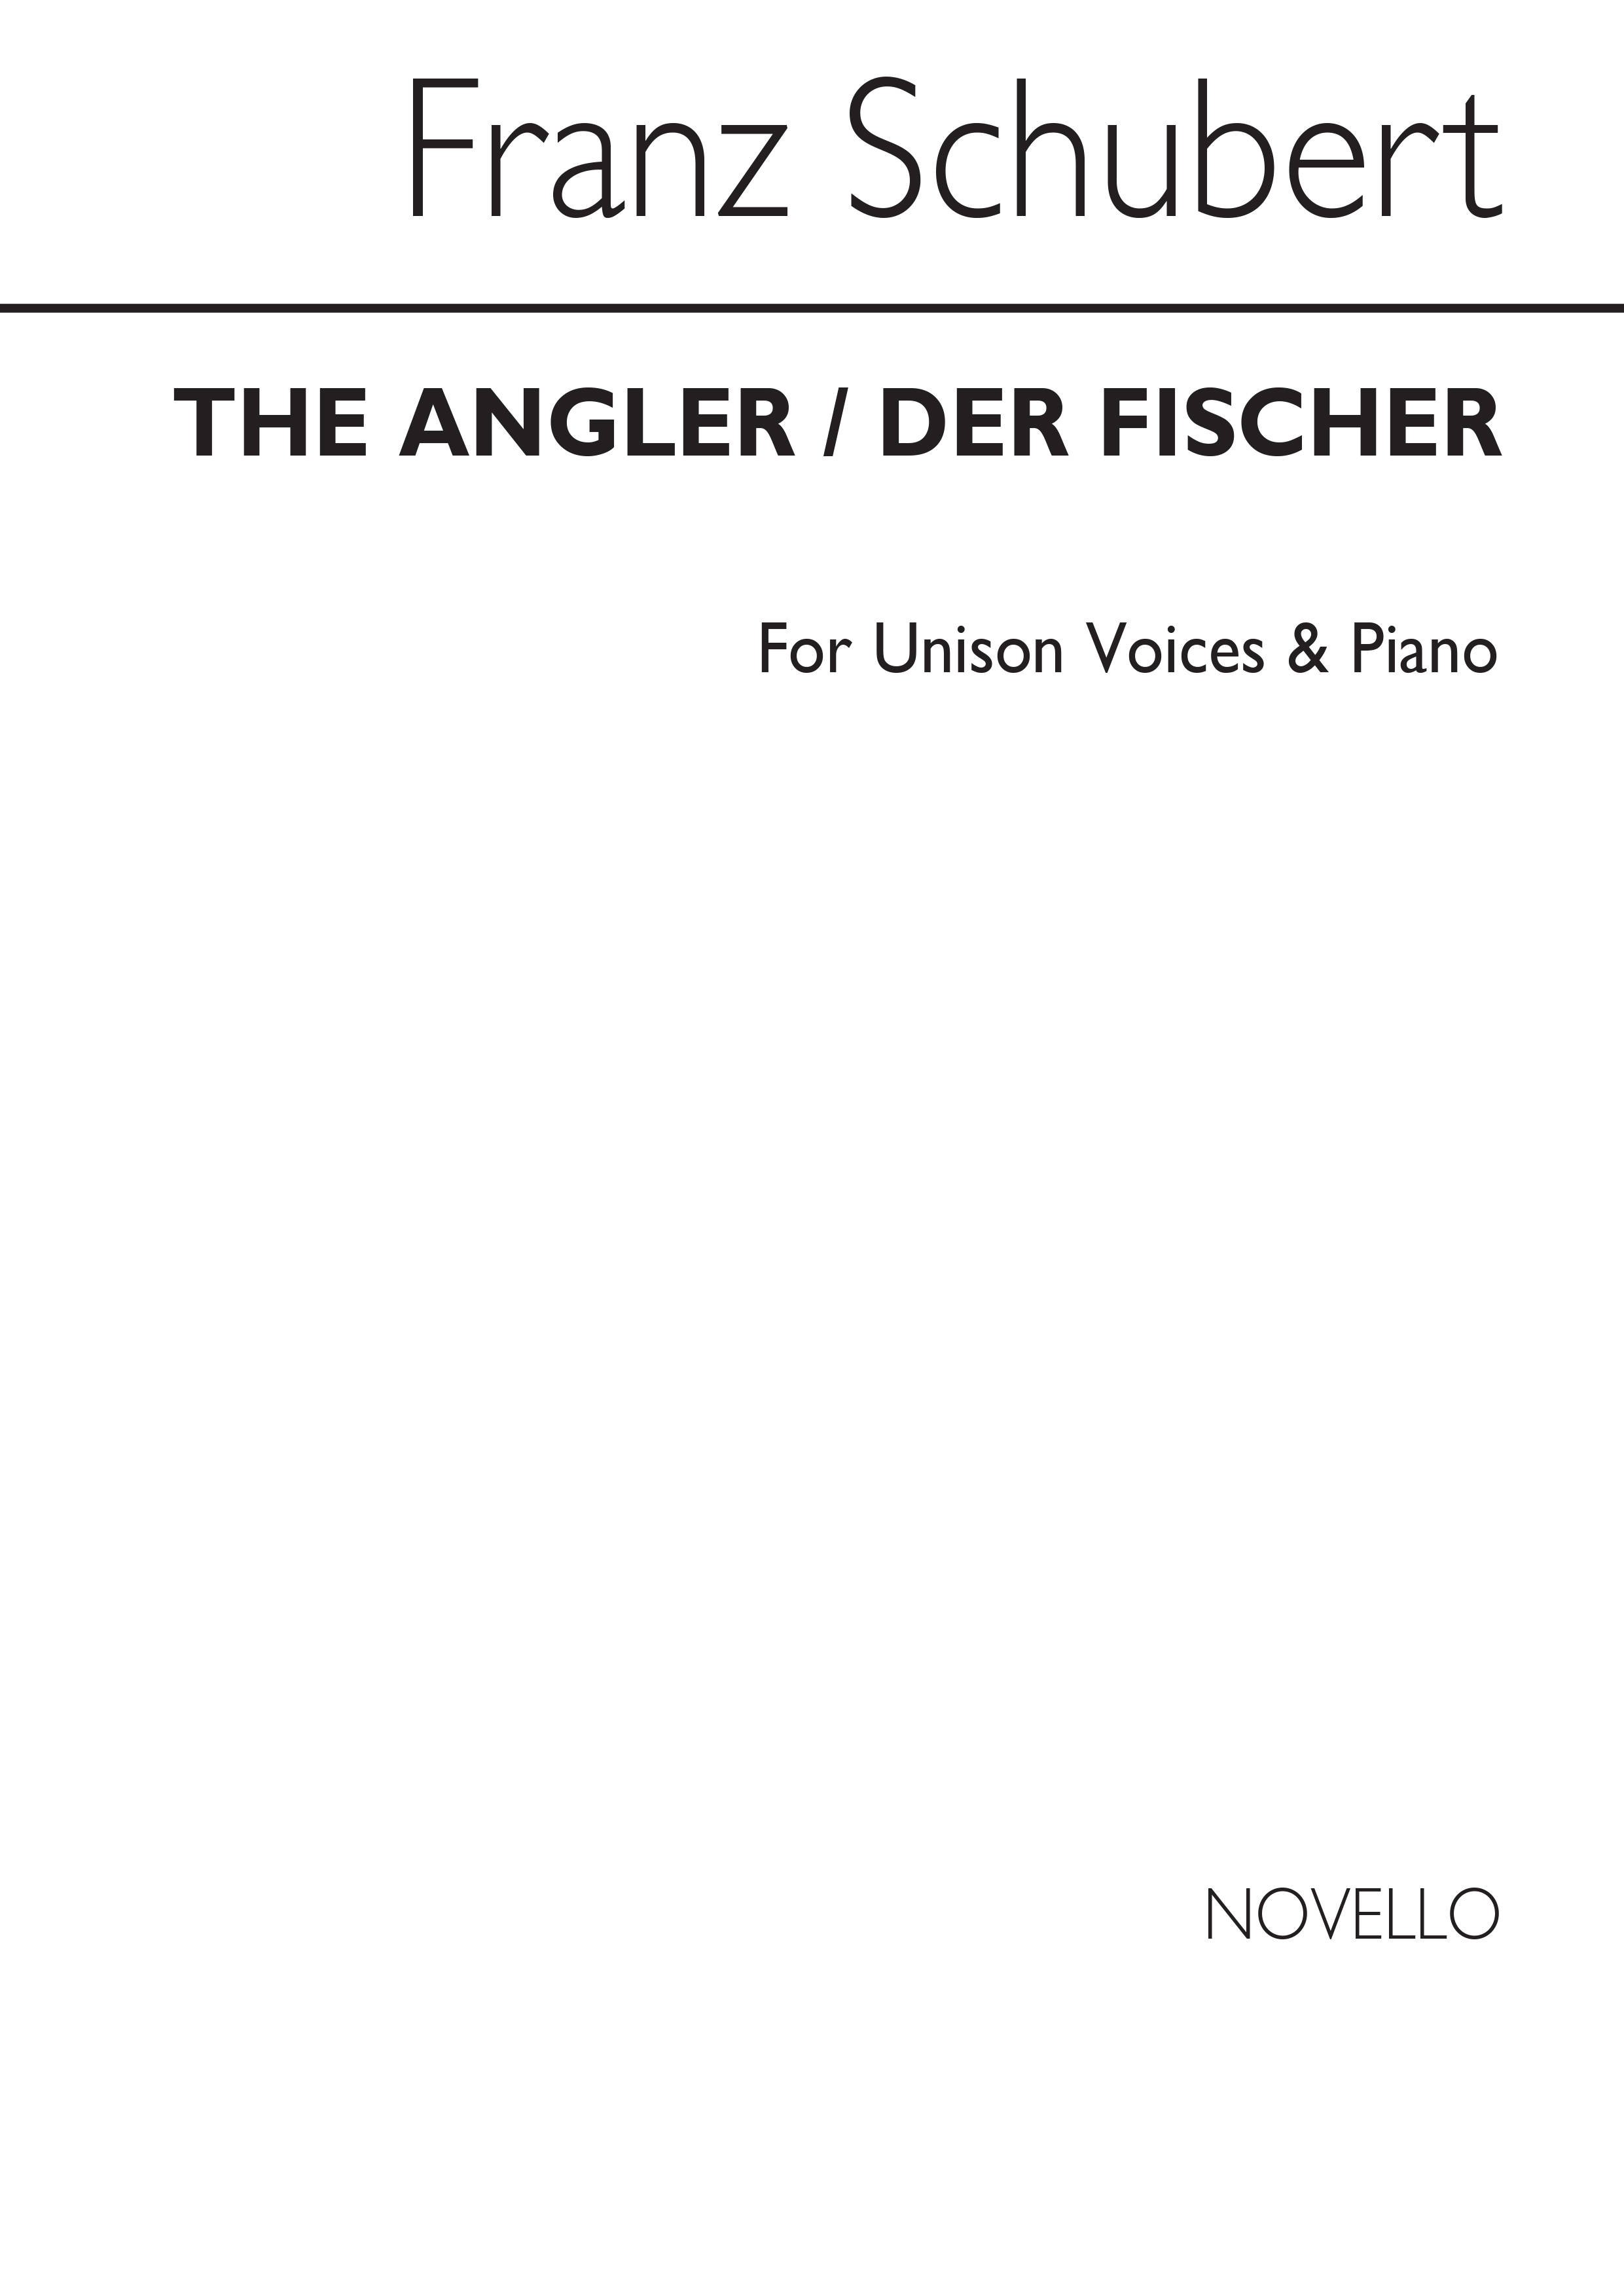 Schubert: Angler/Der Fischer (German/English) Unis